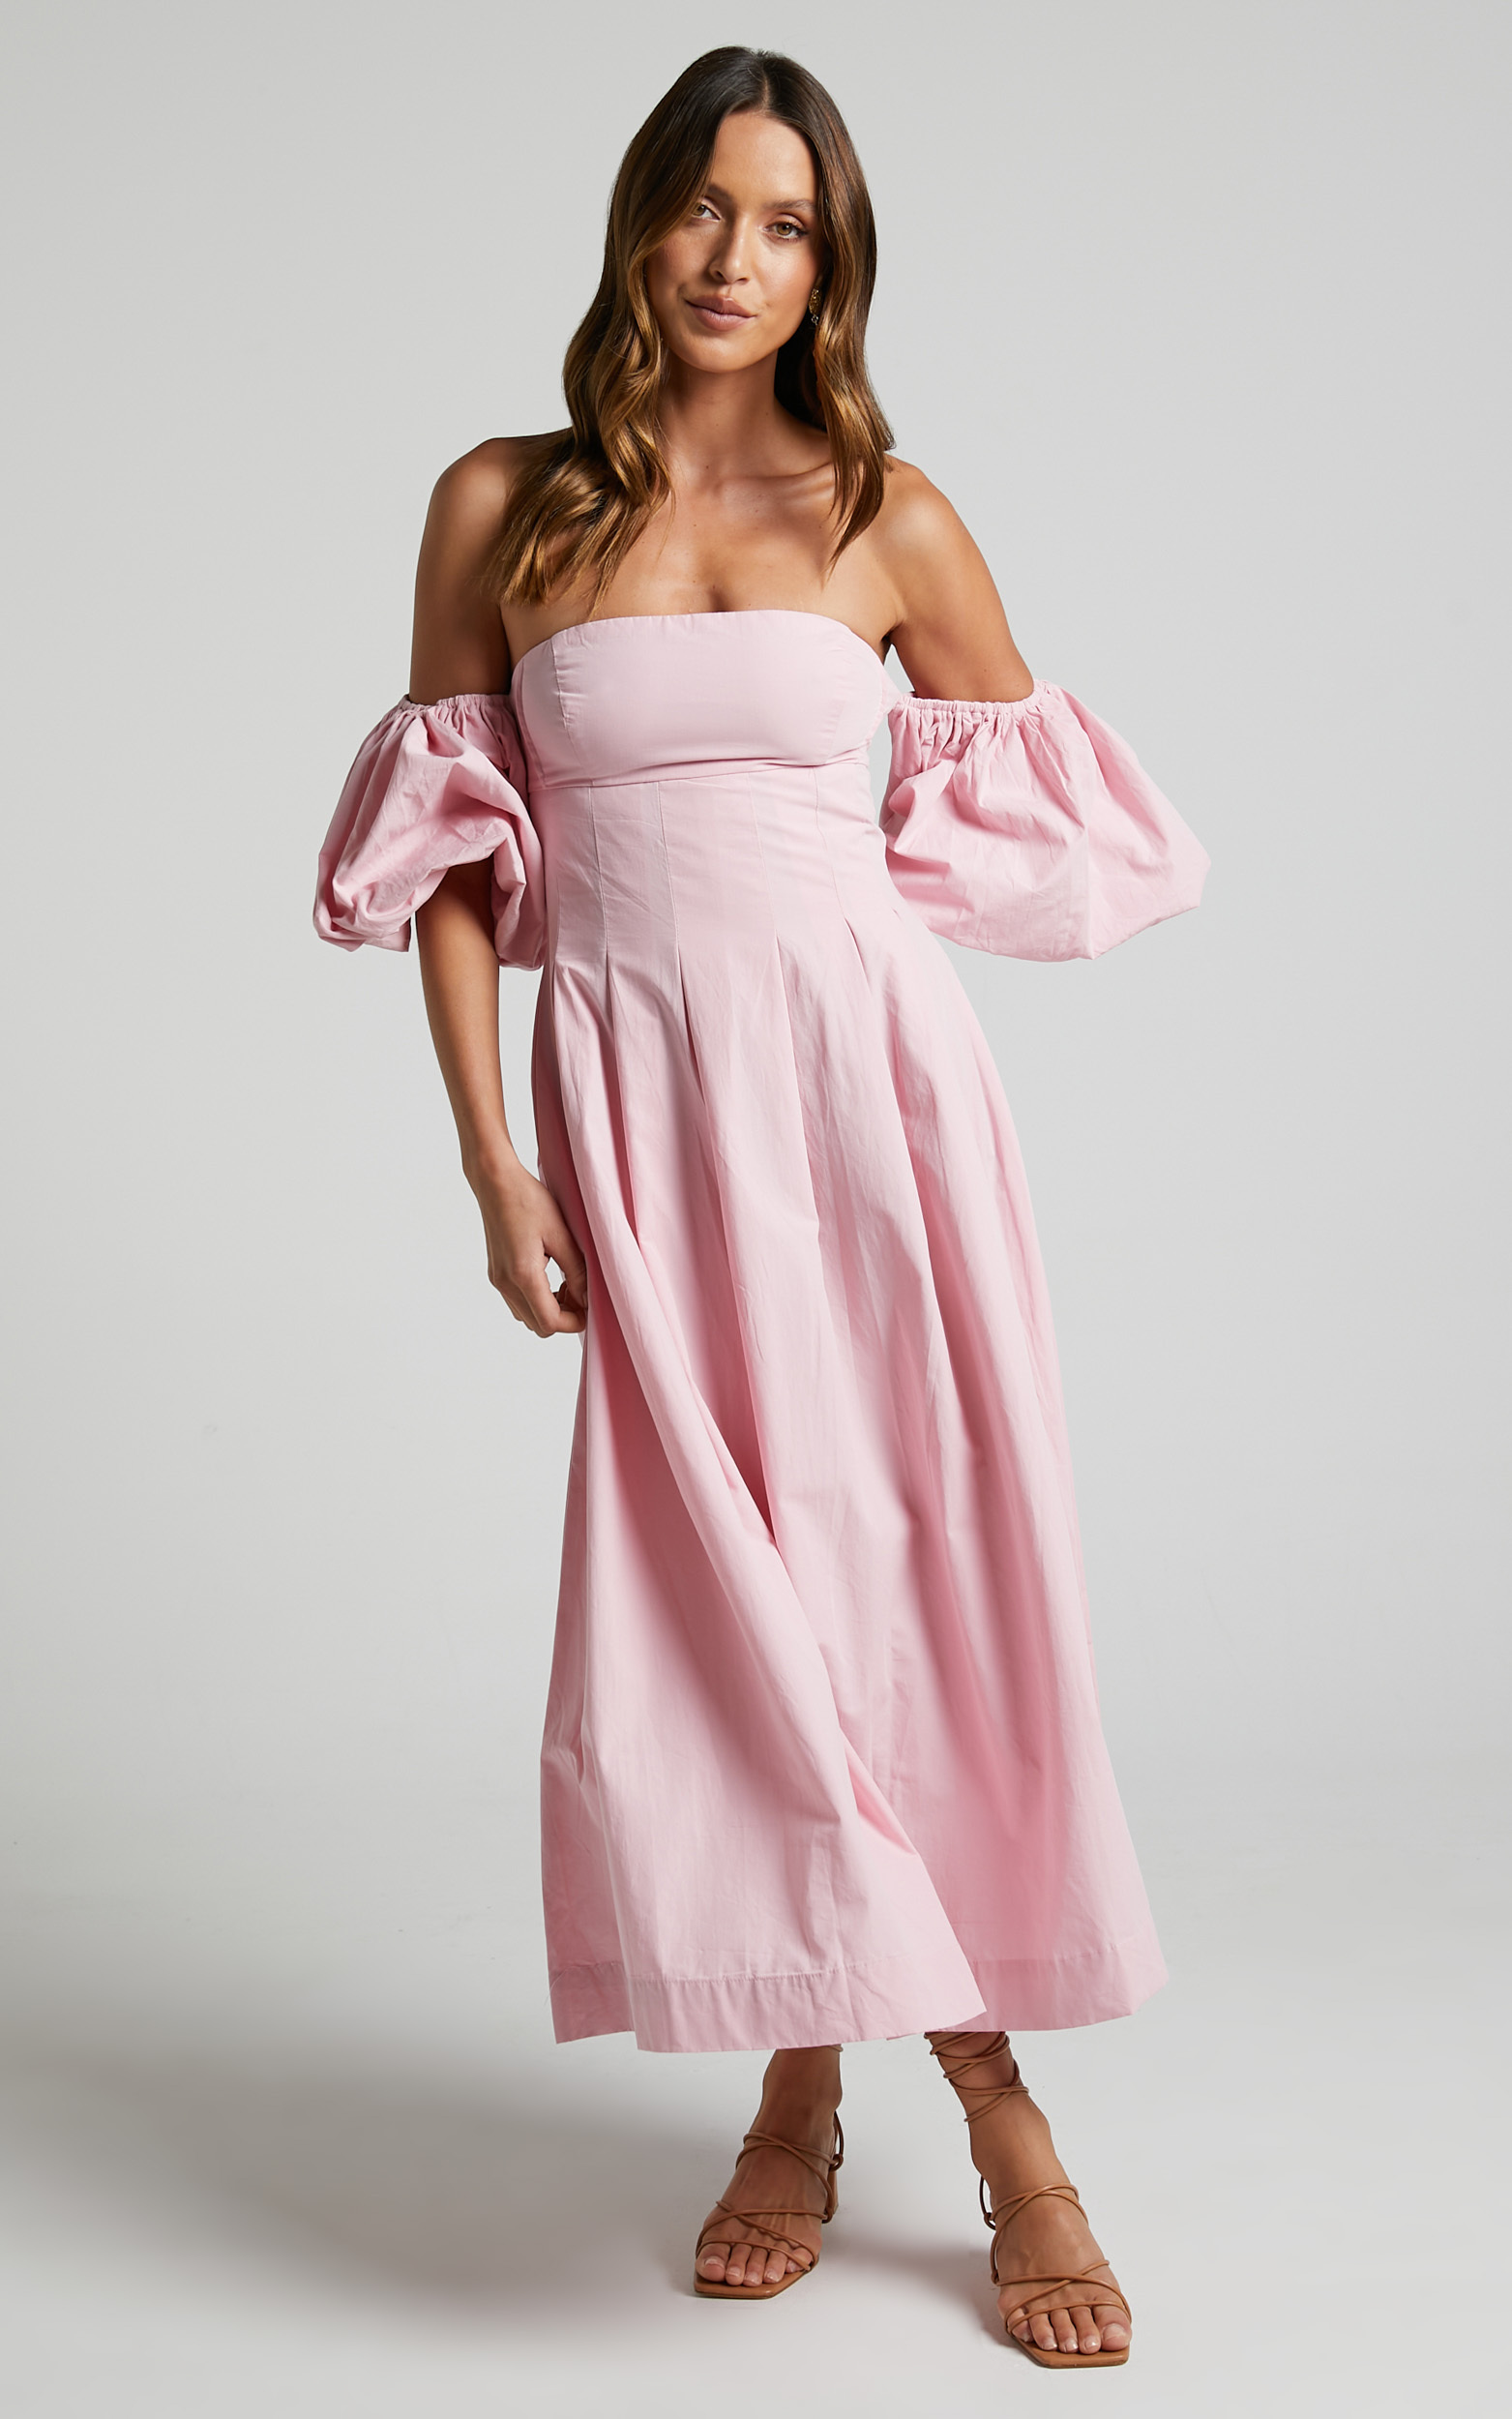 Geloe Structured Off Shoulder Puff Midi Dress in Pink | Showpo USA